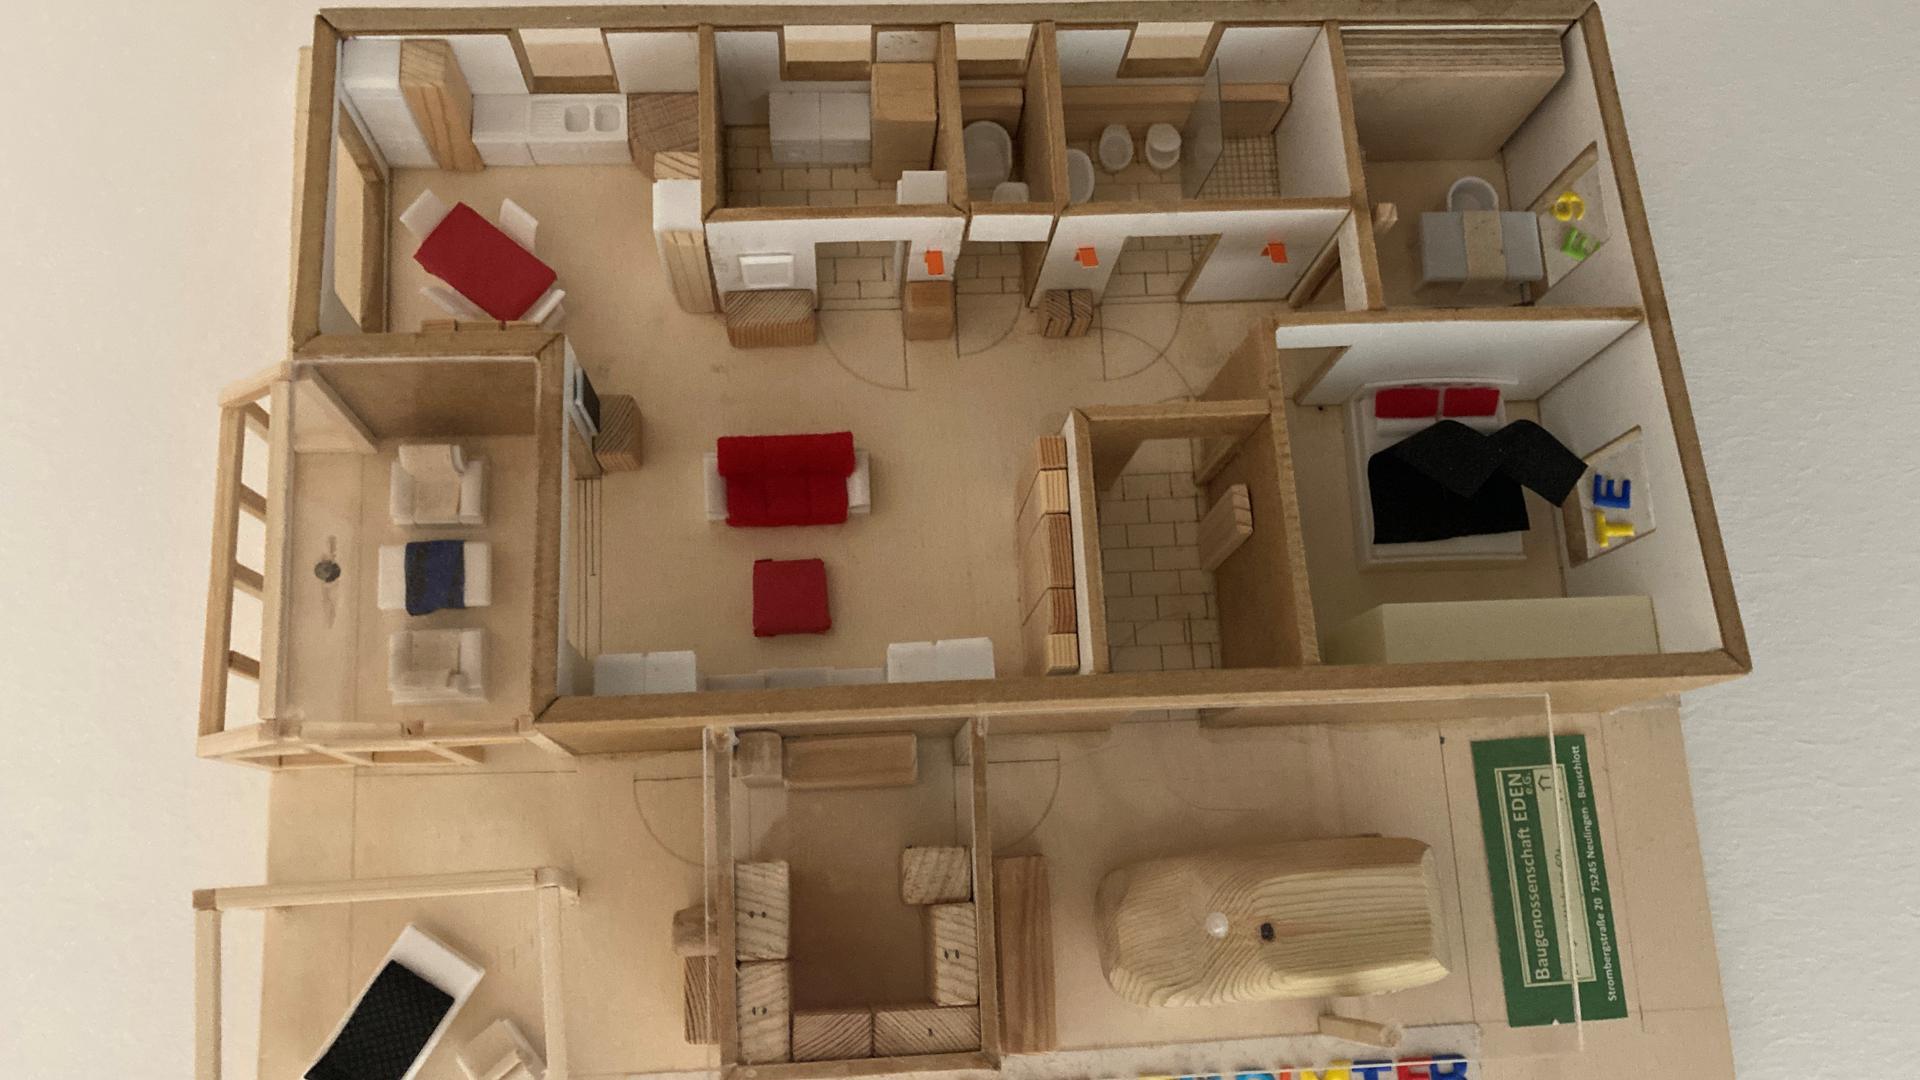 Modell einer Wohnung